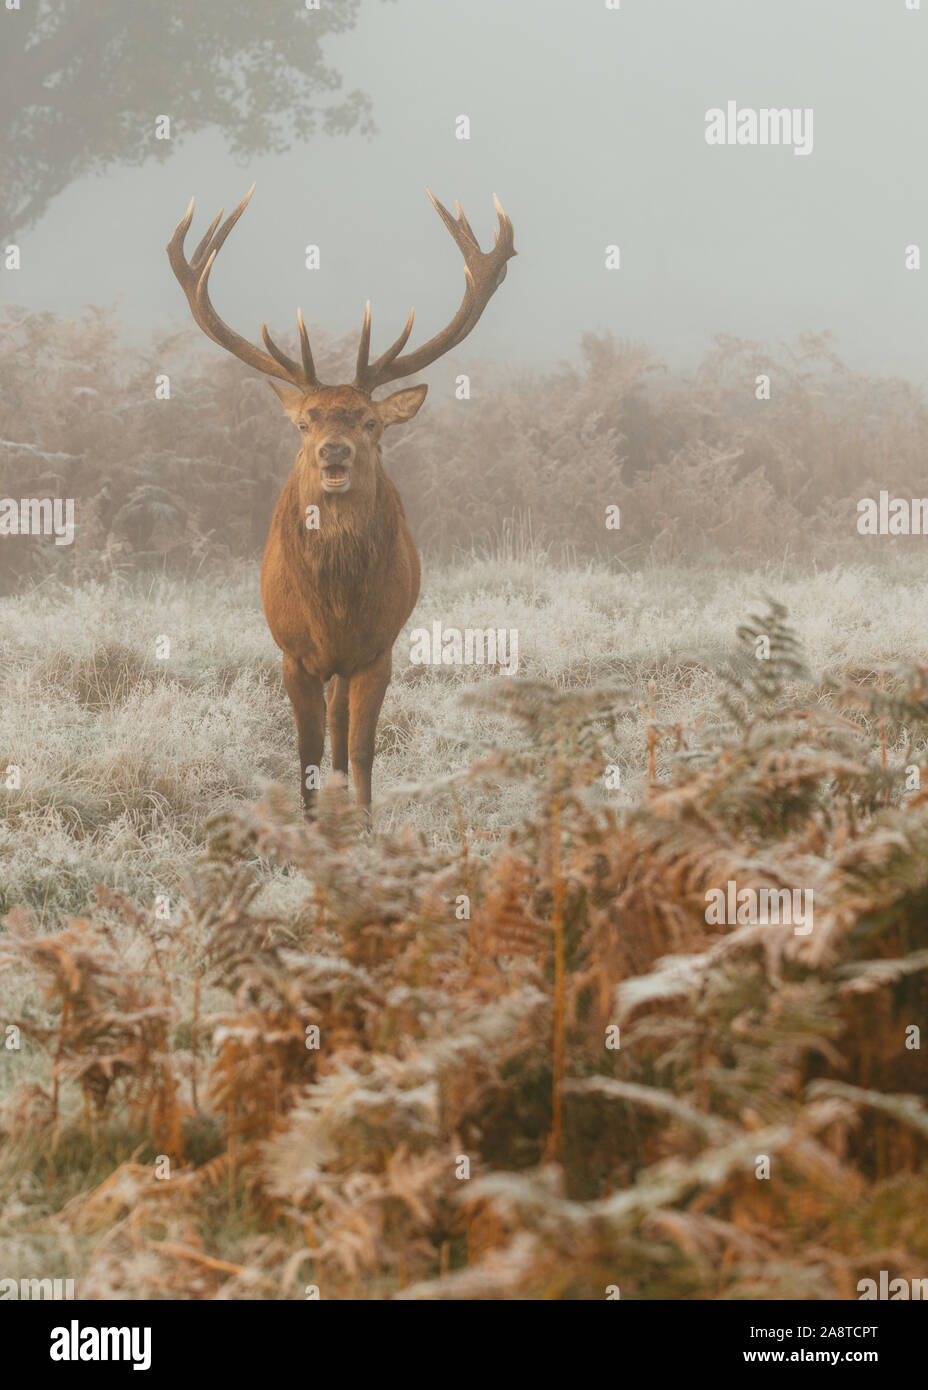 Une famille red deer stag dans les bois de Bushy Park, Londres Angleterre, pris un matin froid et brumeux de l'automne au cours de saison du rut Banque D'Images